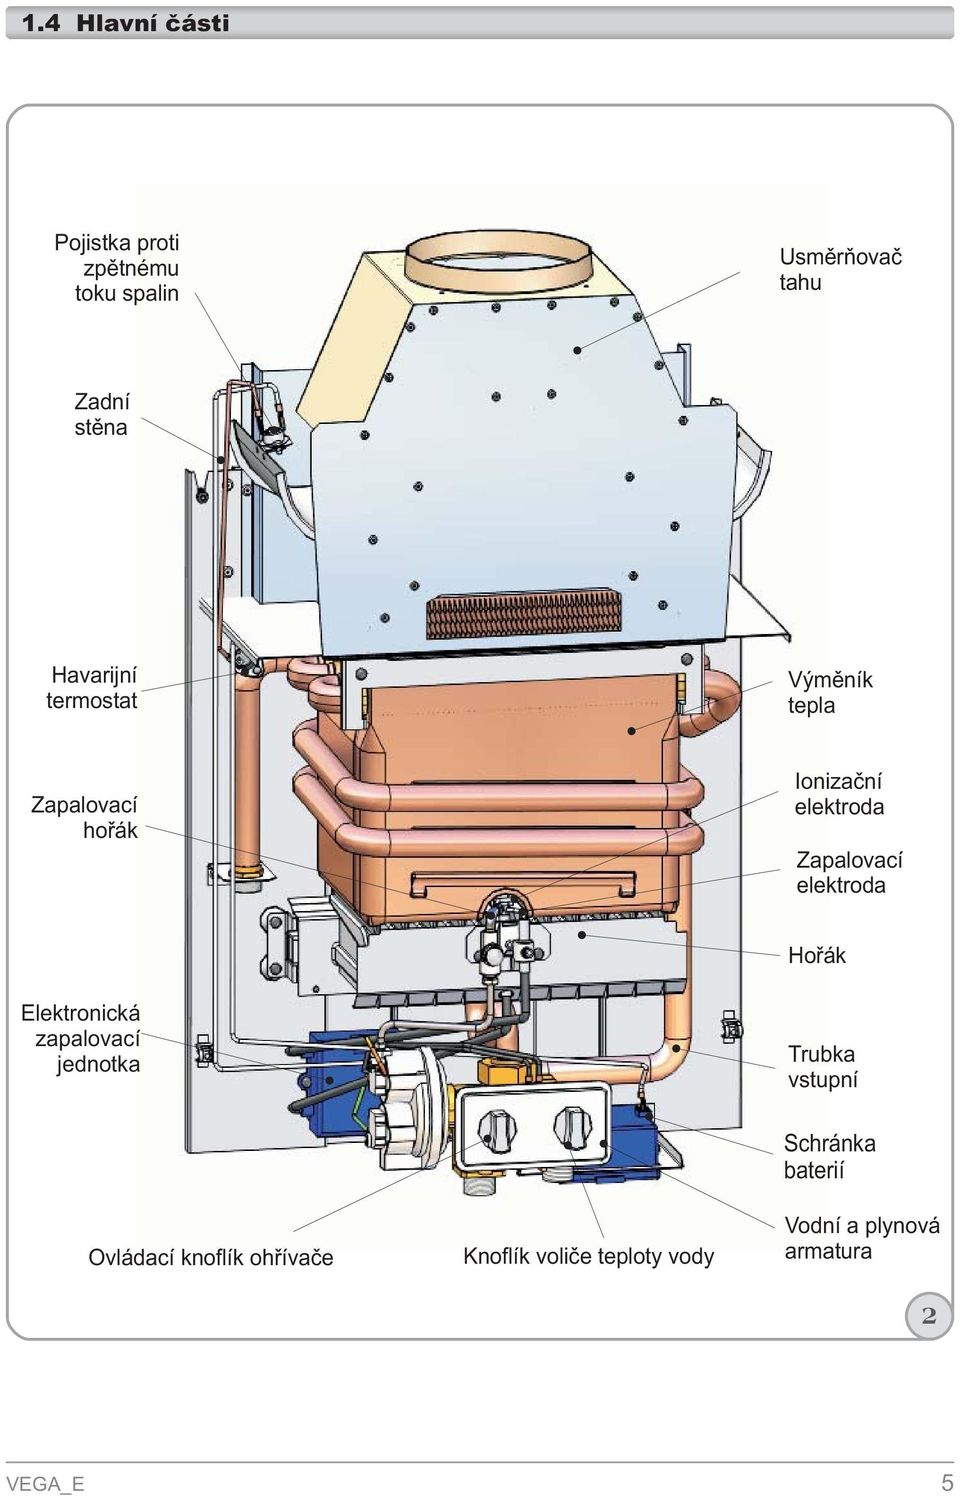 VEGA E. Plynový průtokový ohřívač vody. s bateriovým zapalováním. Návod na  instalaci, údržbu a obsluhu IFU VEGAE/ - PDF Stažení zdarma